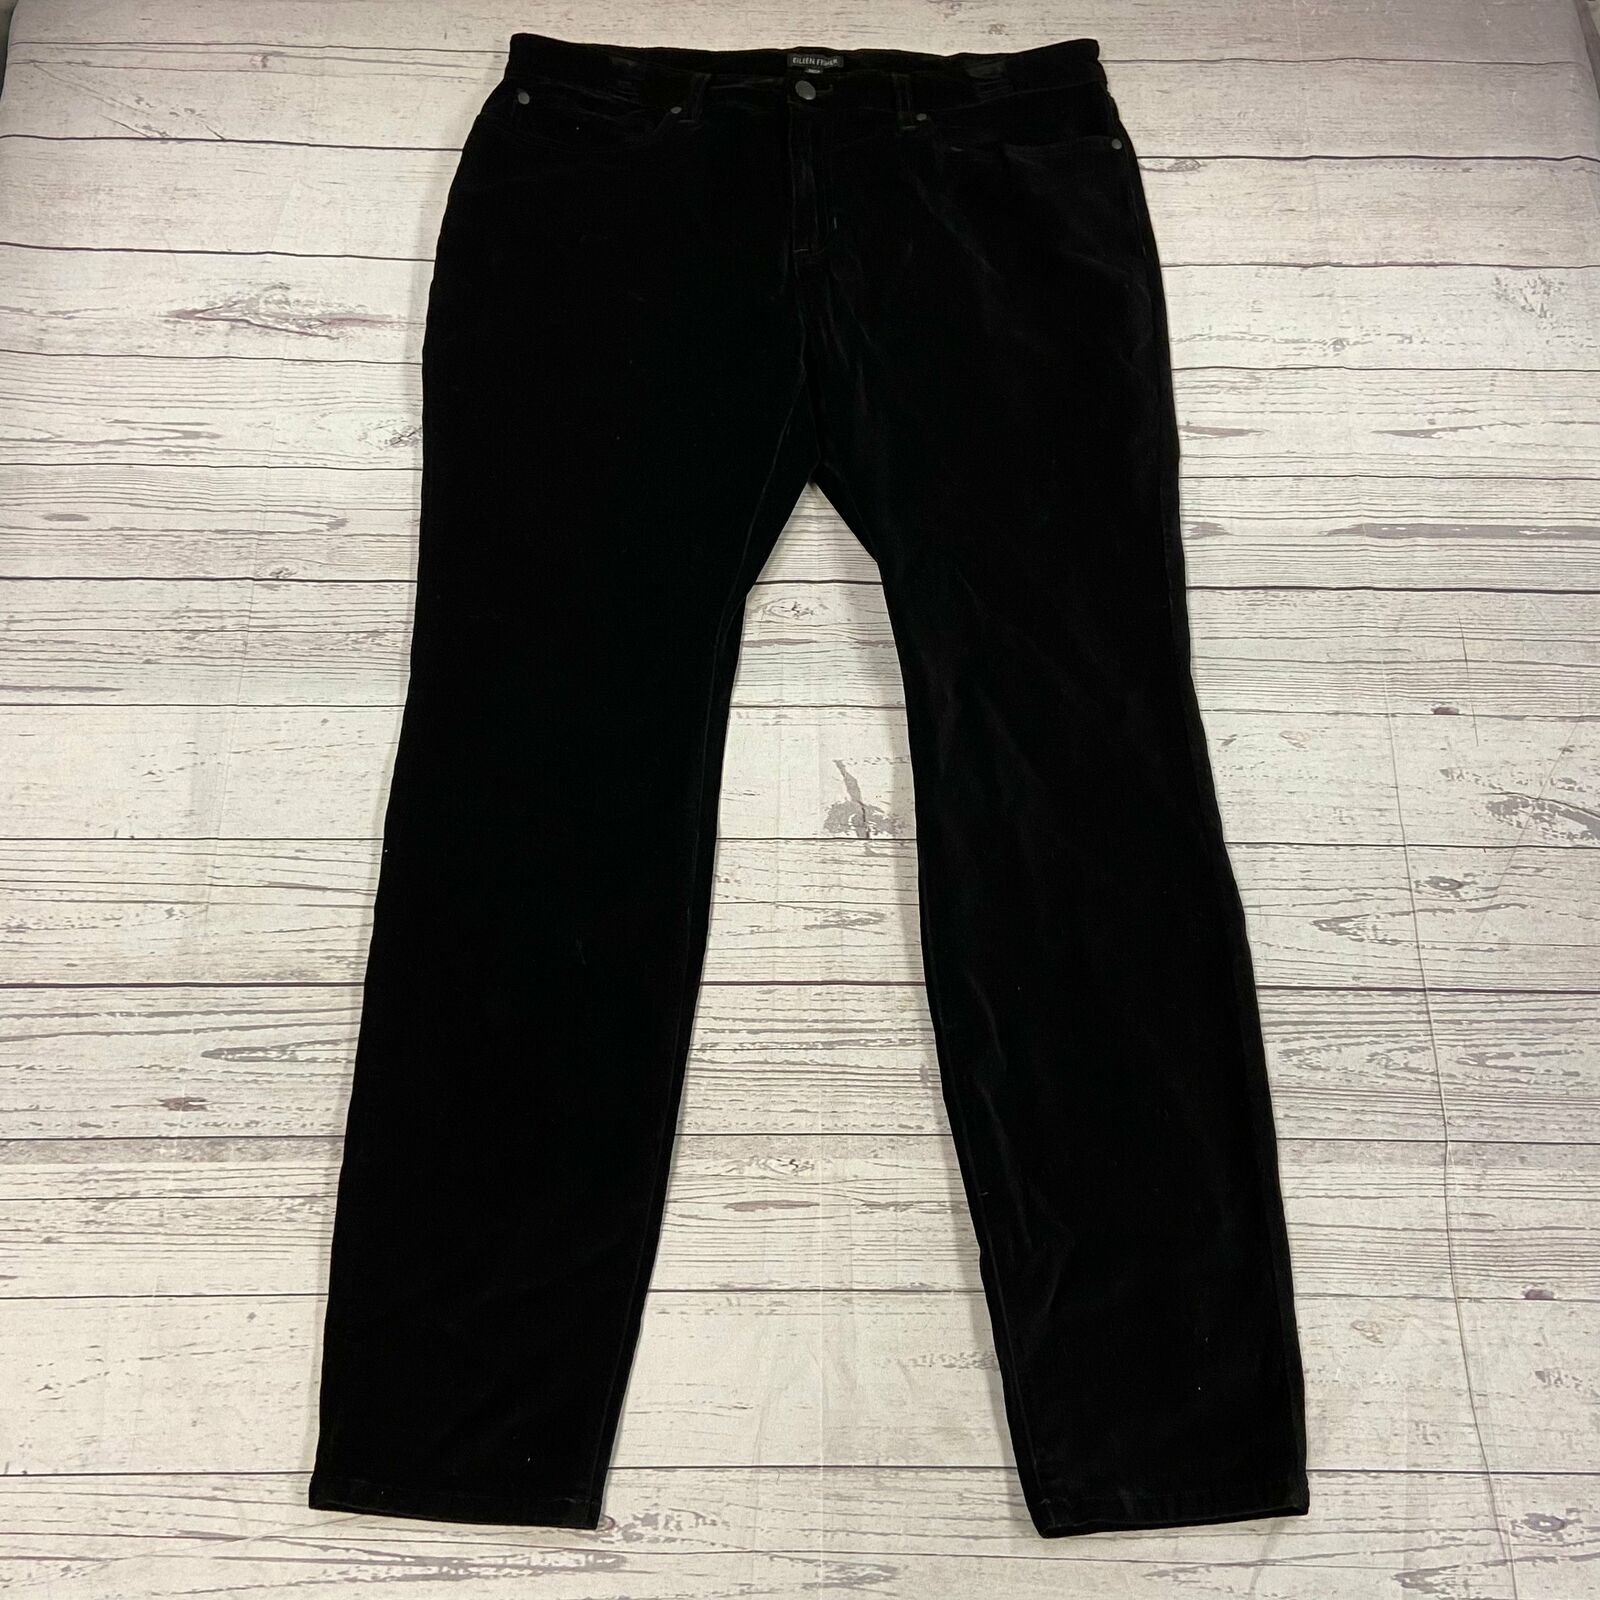 Eileen Fisher Black Velvet Ankle Skinny Pants Jeans Women Size 14